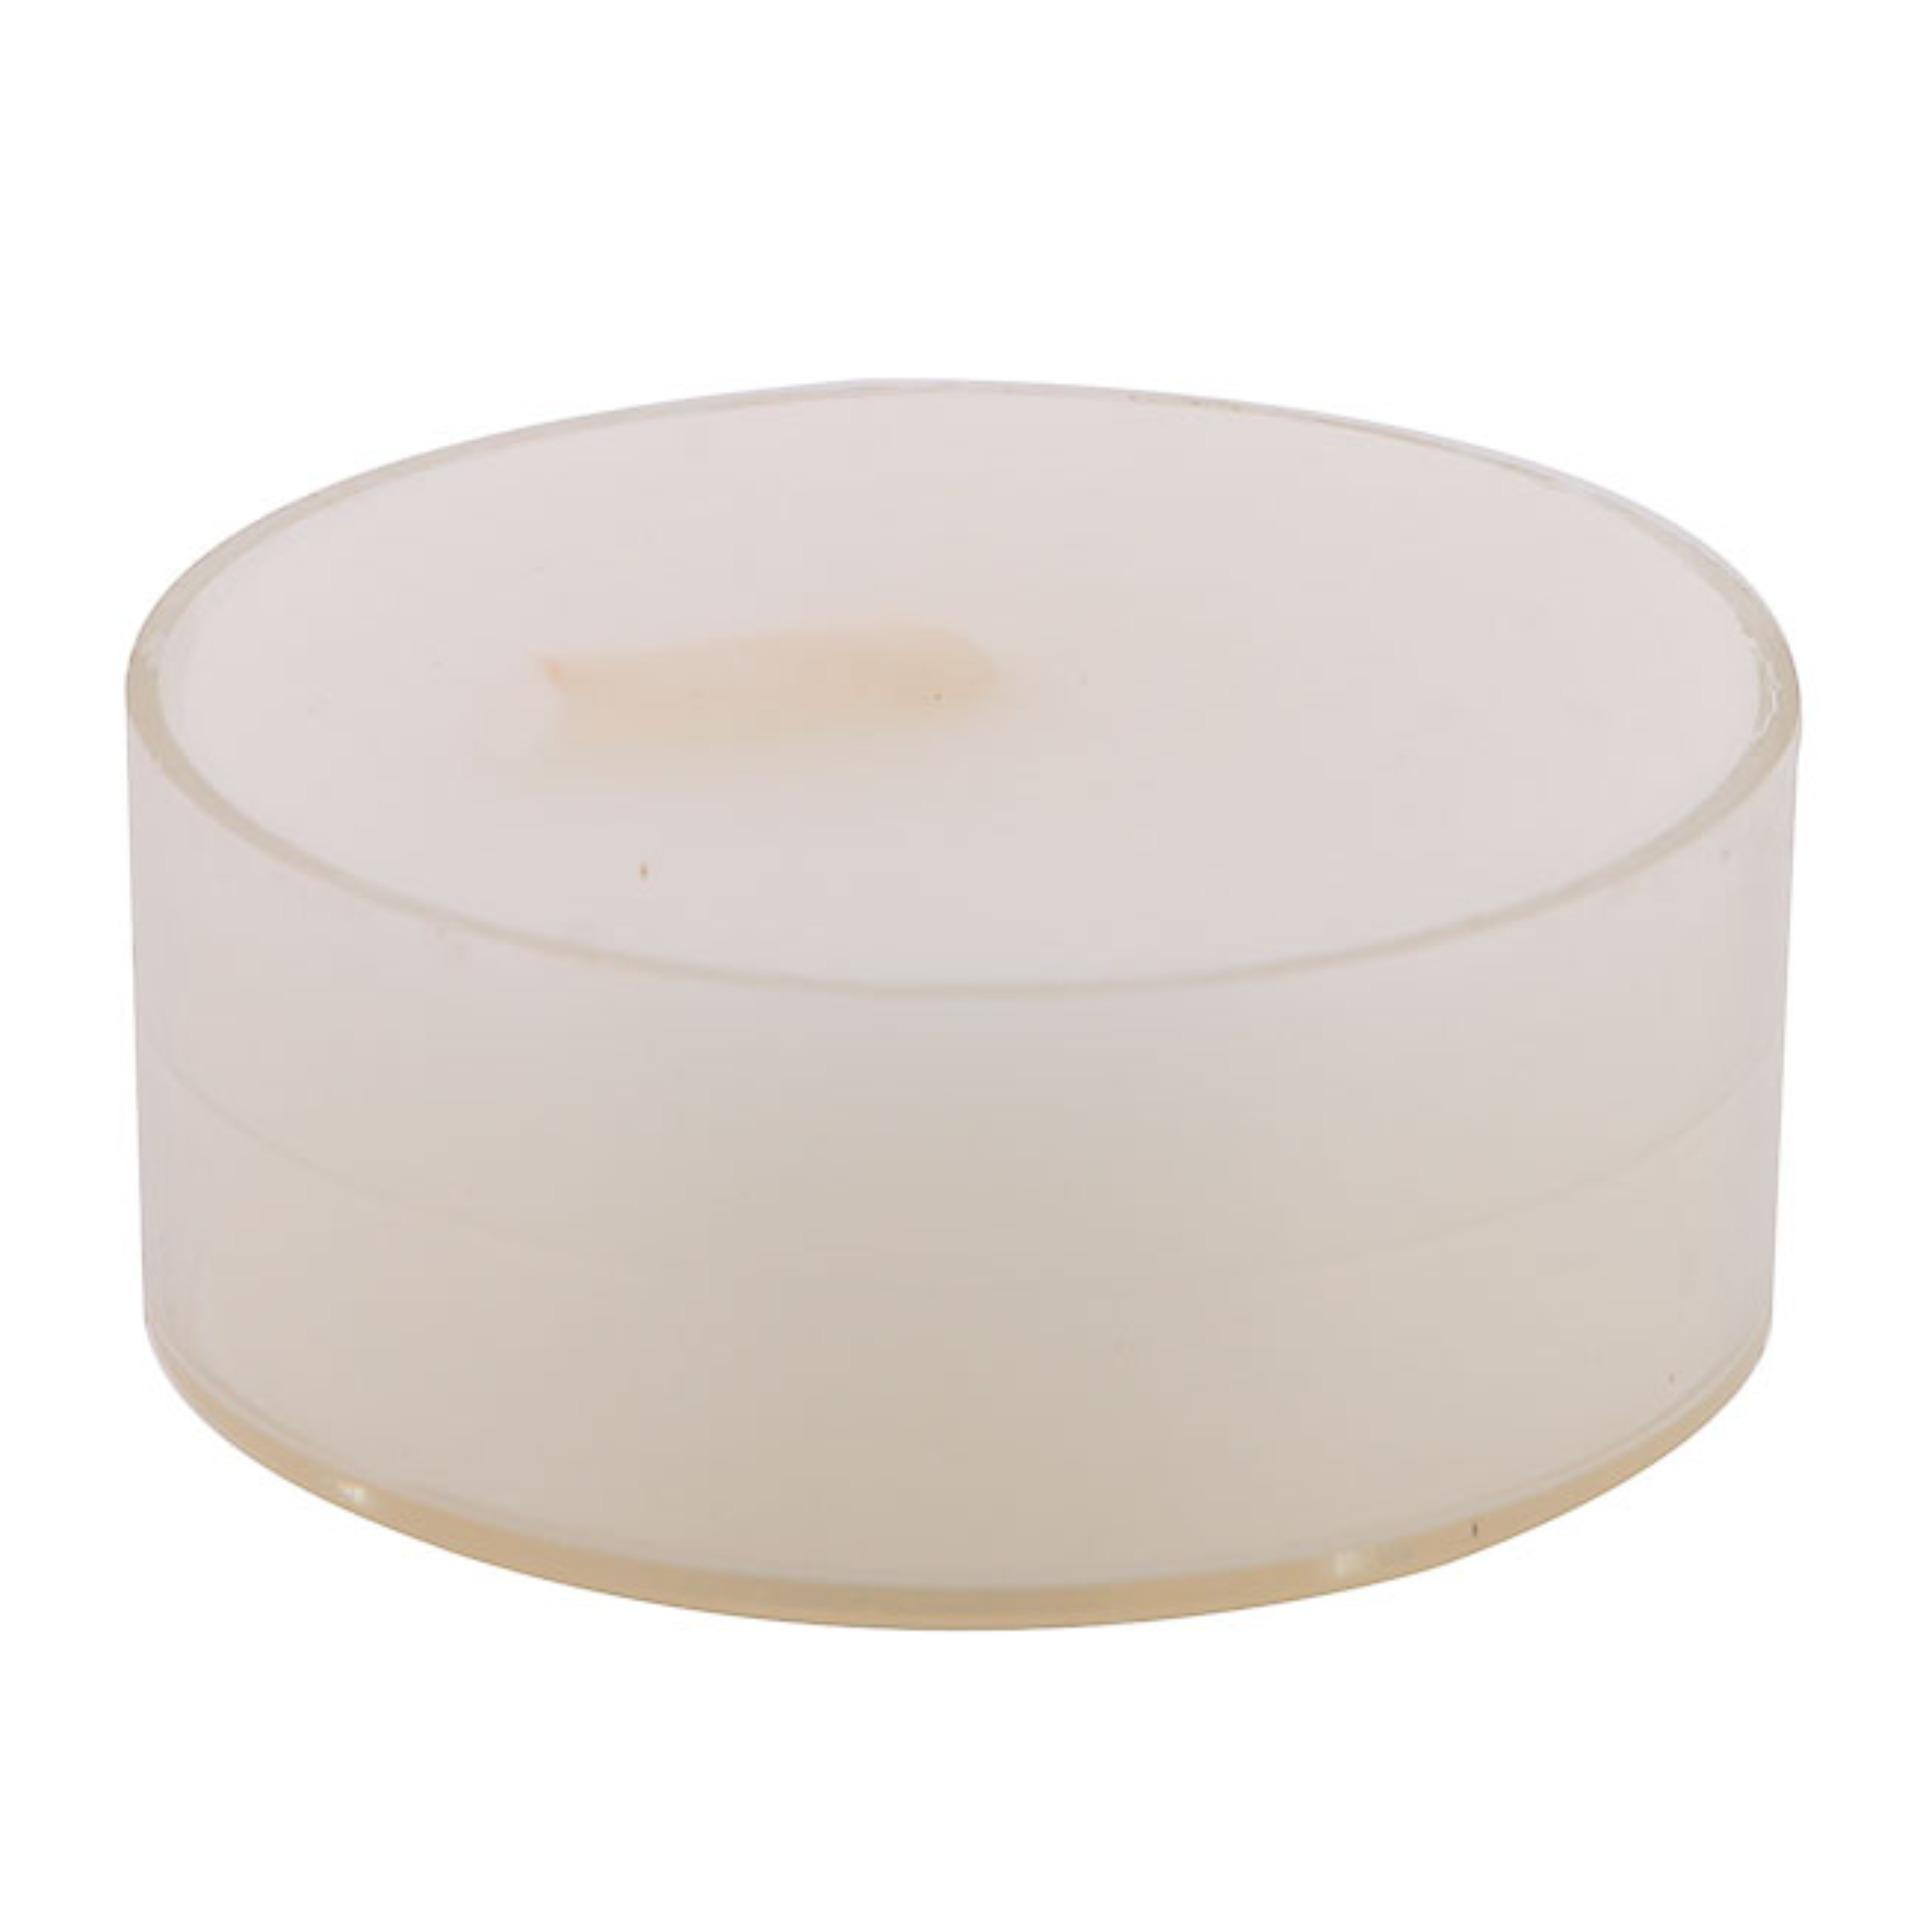 Bộ 6 hộp nến tealight thơm đế nhựa (8 nến/hộp) NQM FtraMart (Kem)